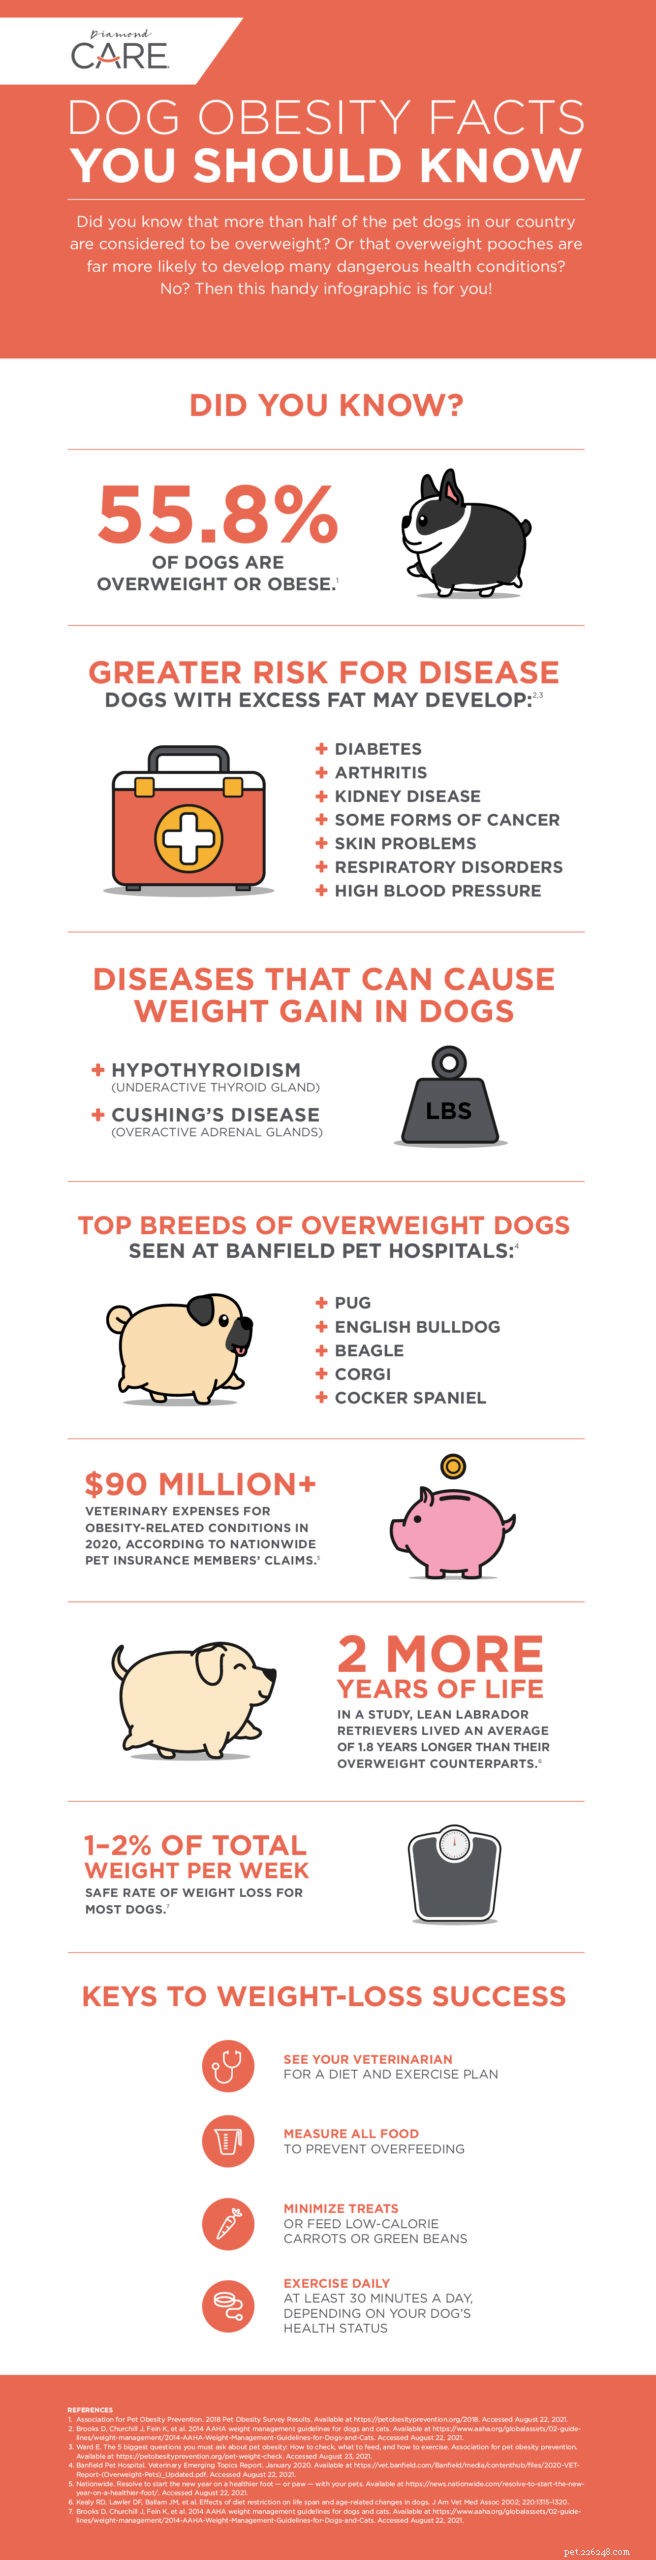 Distribuire alcuni fatti sull obesità canina